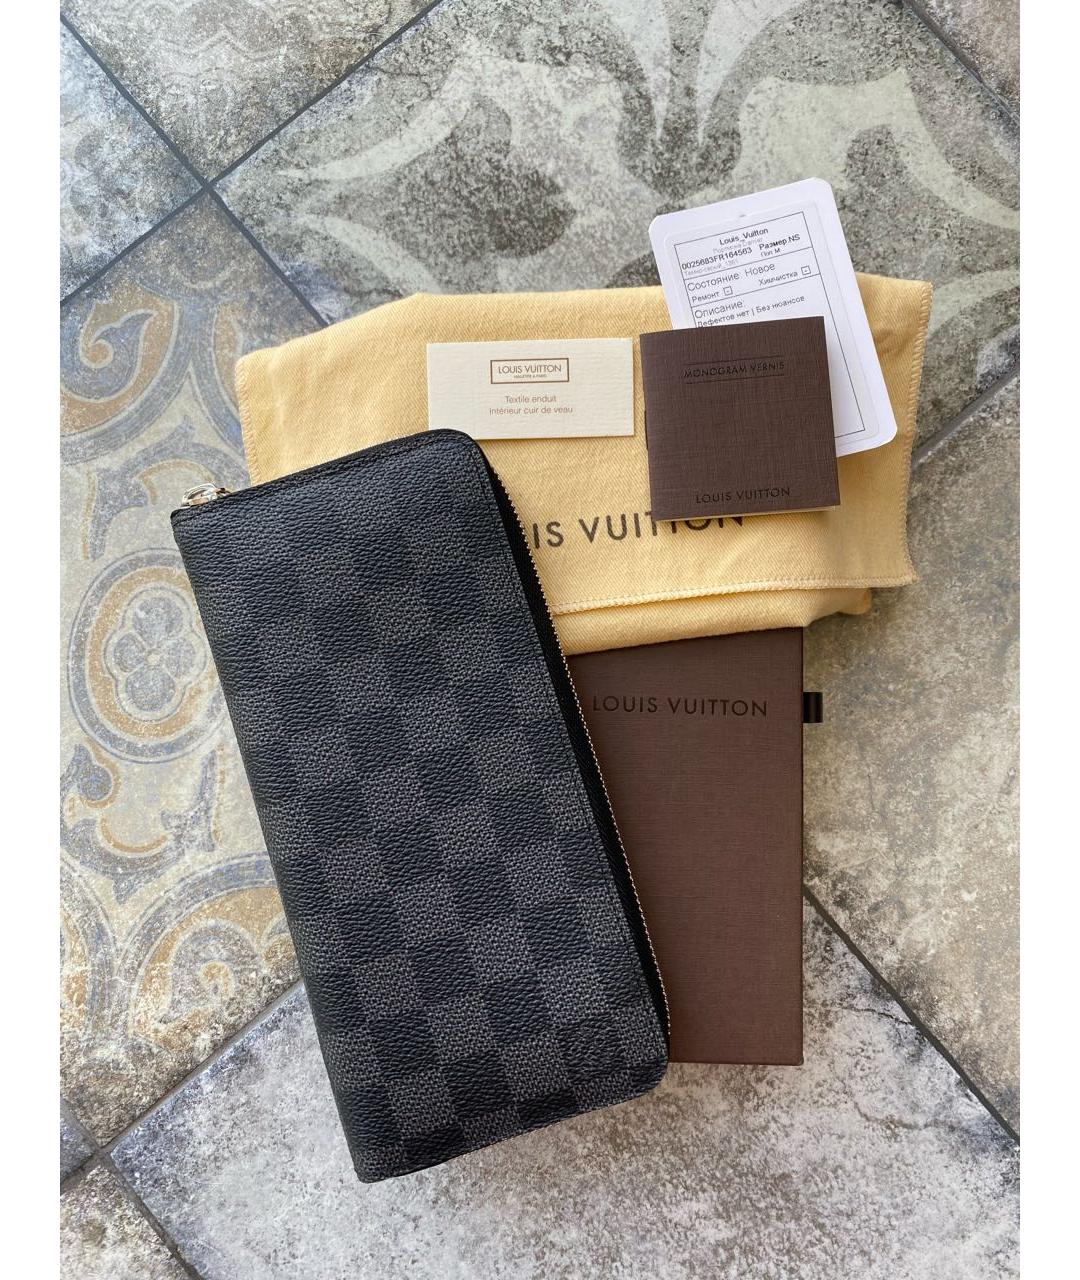 Louis Vuitton кошельки и бумажники в Кемерово - купить недорого